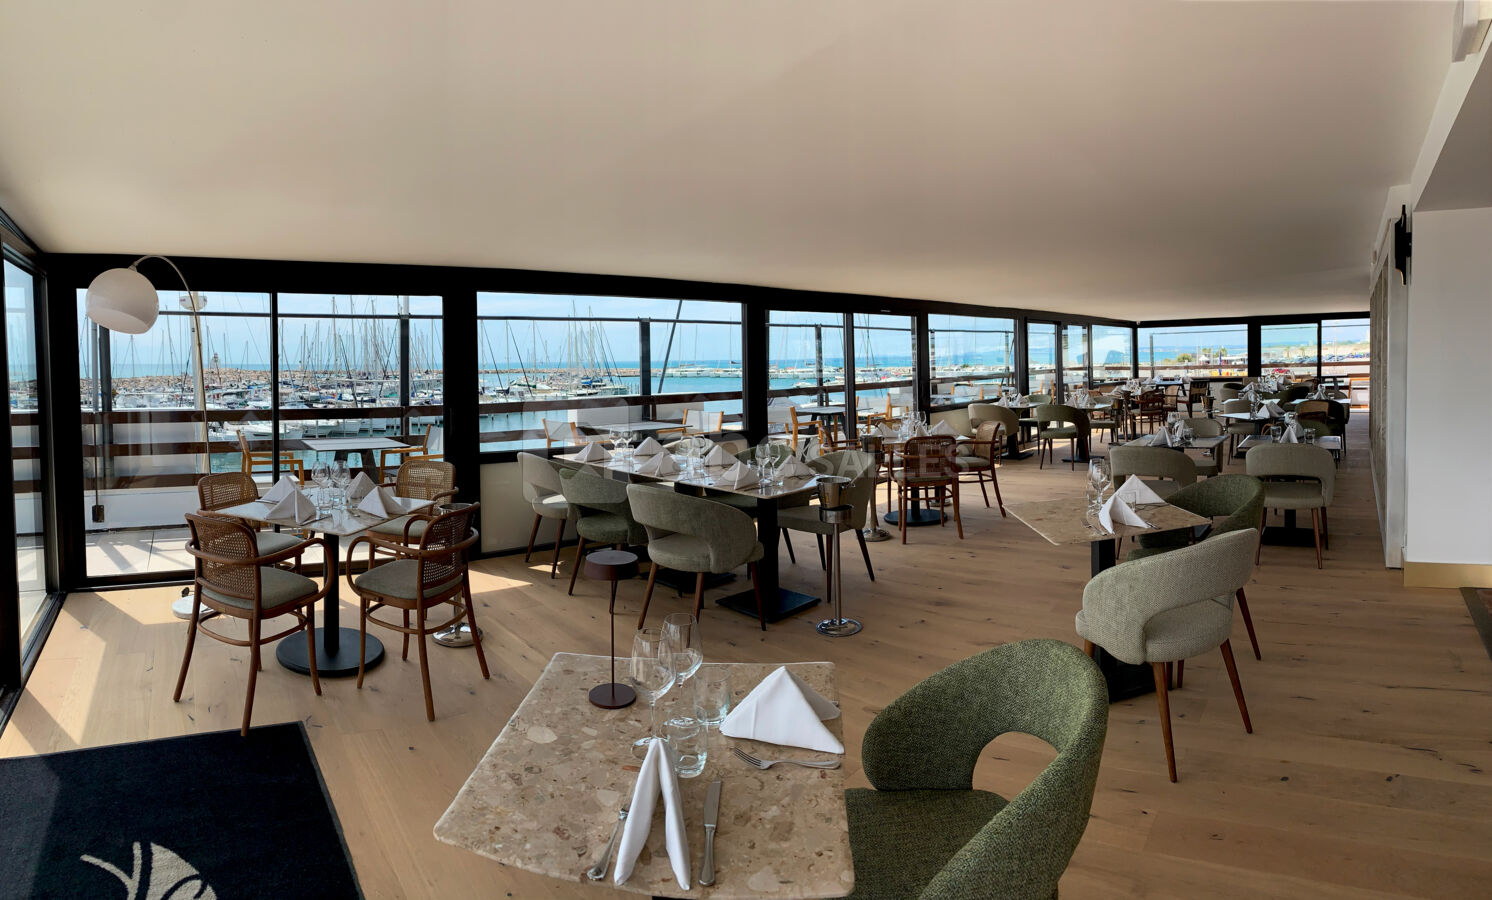 Restaurant Le Yacht Club - Salle